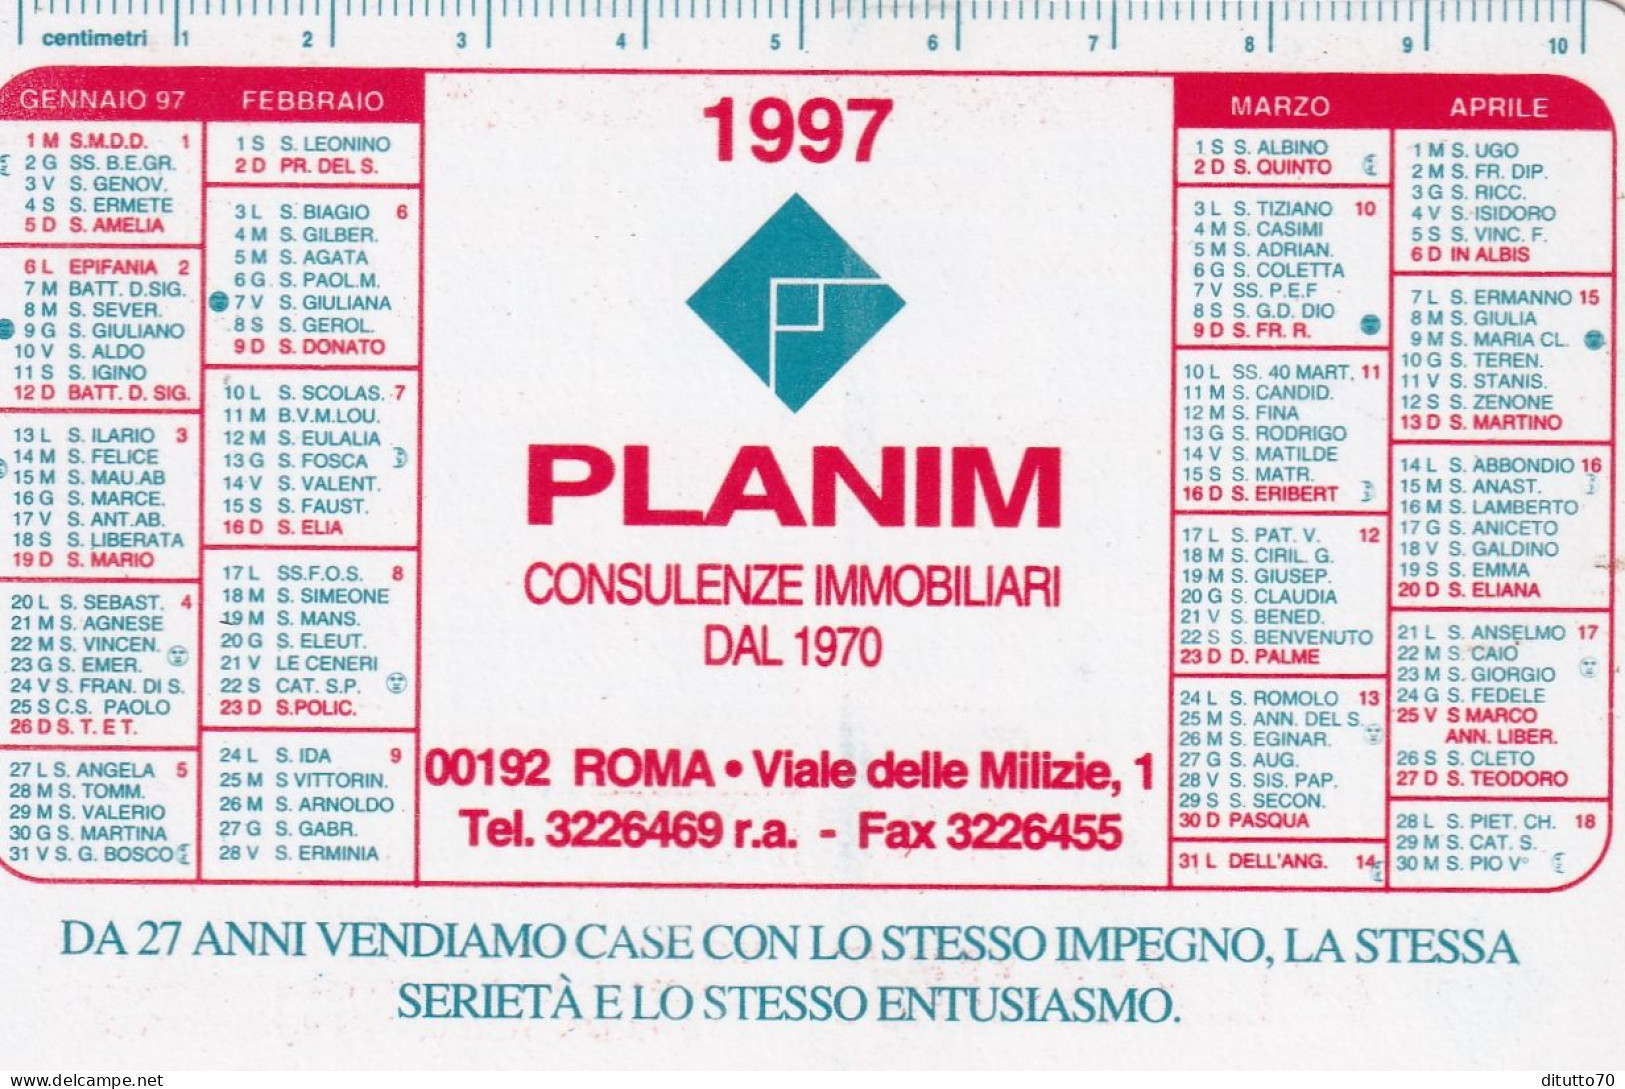 Calendarietto - Planim - Consulenza Immobiliari - Roma - Anno 1997 - Tamaño Pequeño : 1991-00